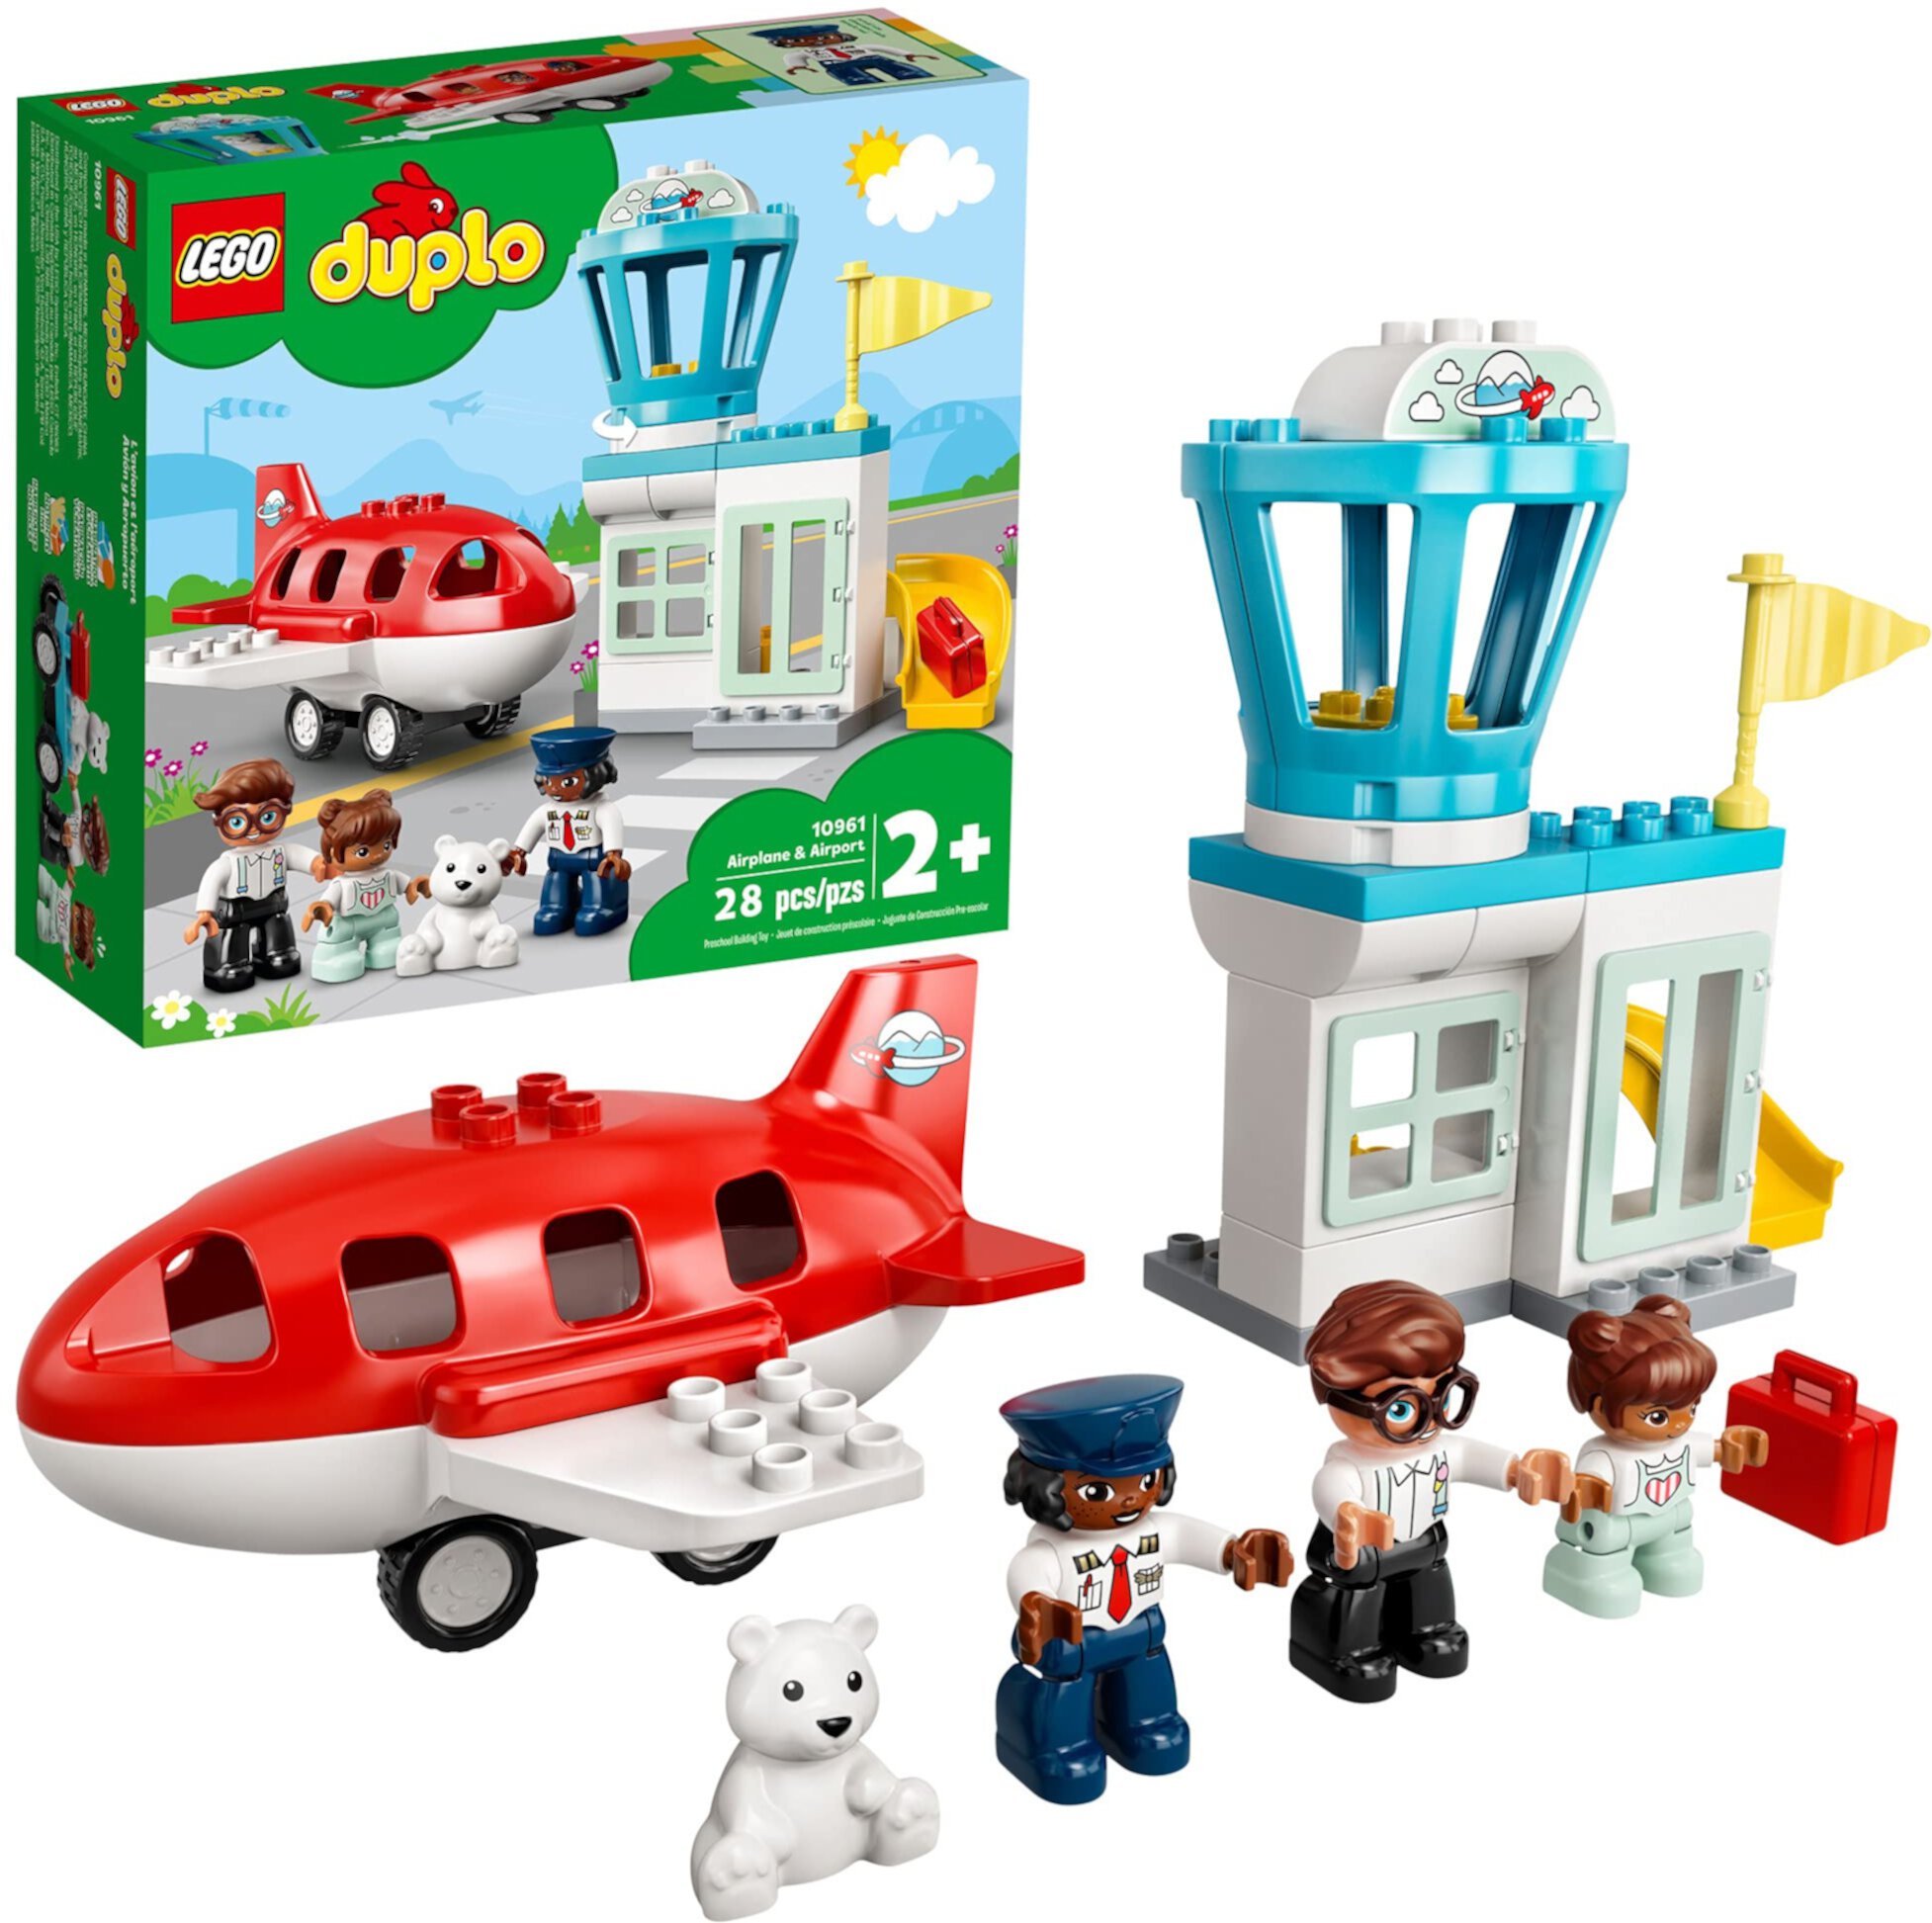 LEGO DUPLO Городской самолет и аэропорт 10961 Строительная игрушка; Творческий игровой набор для детей; Отличный, забавный подарок для малышей; Новинка 2021 (28 шт.) Lego